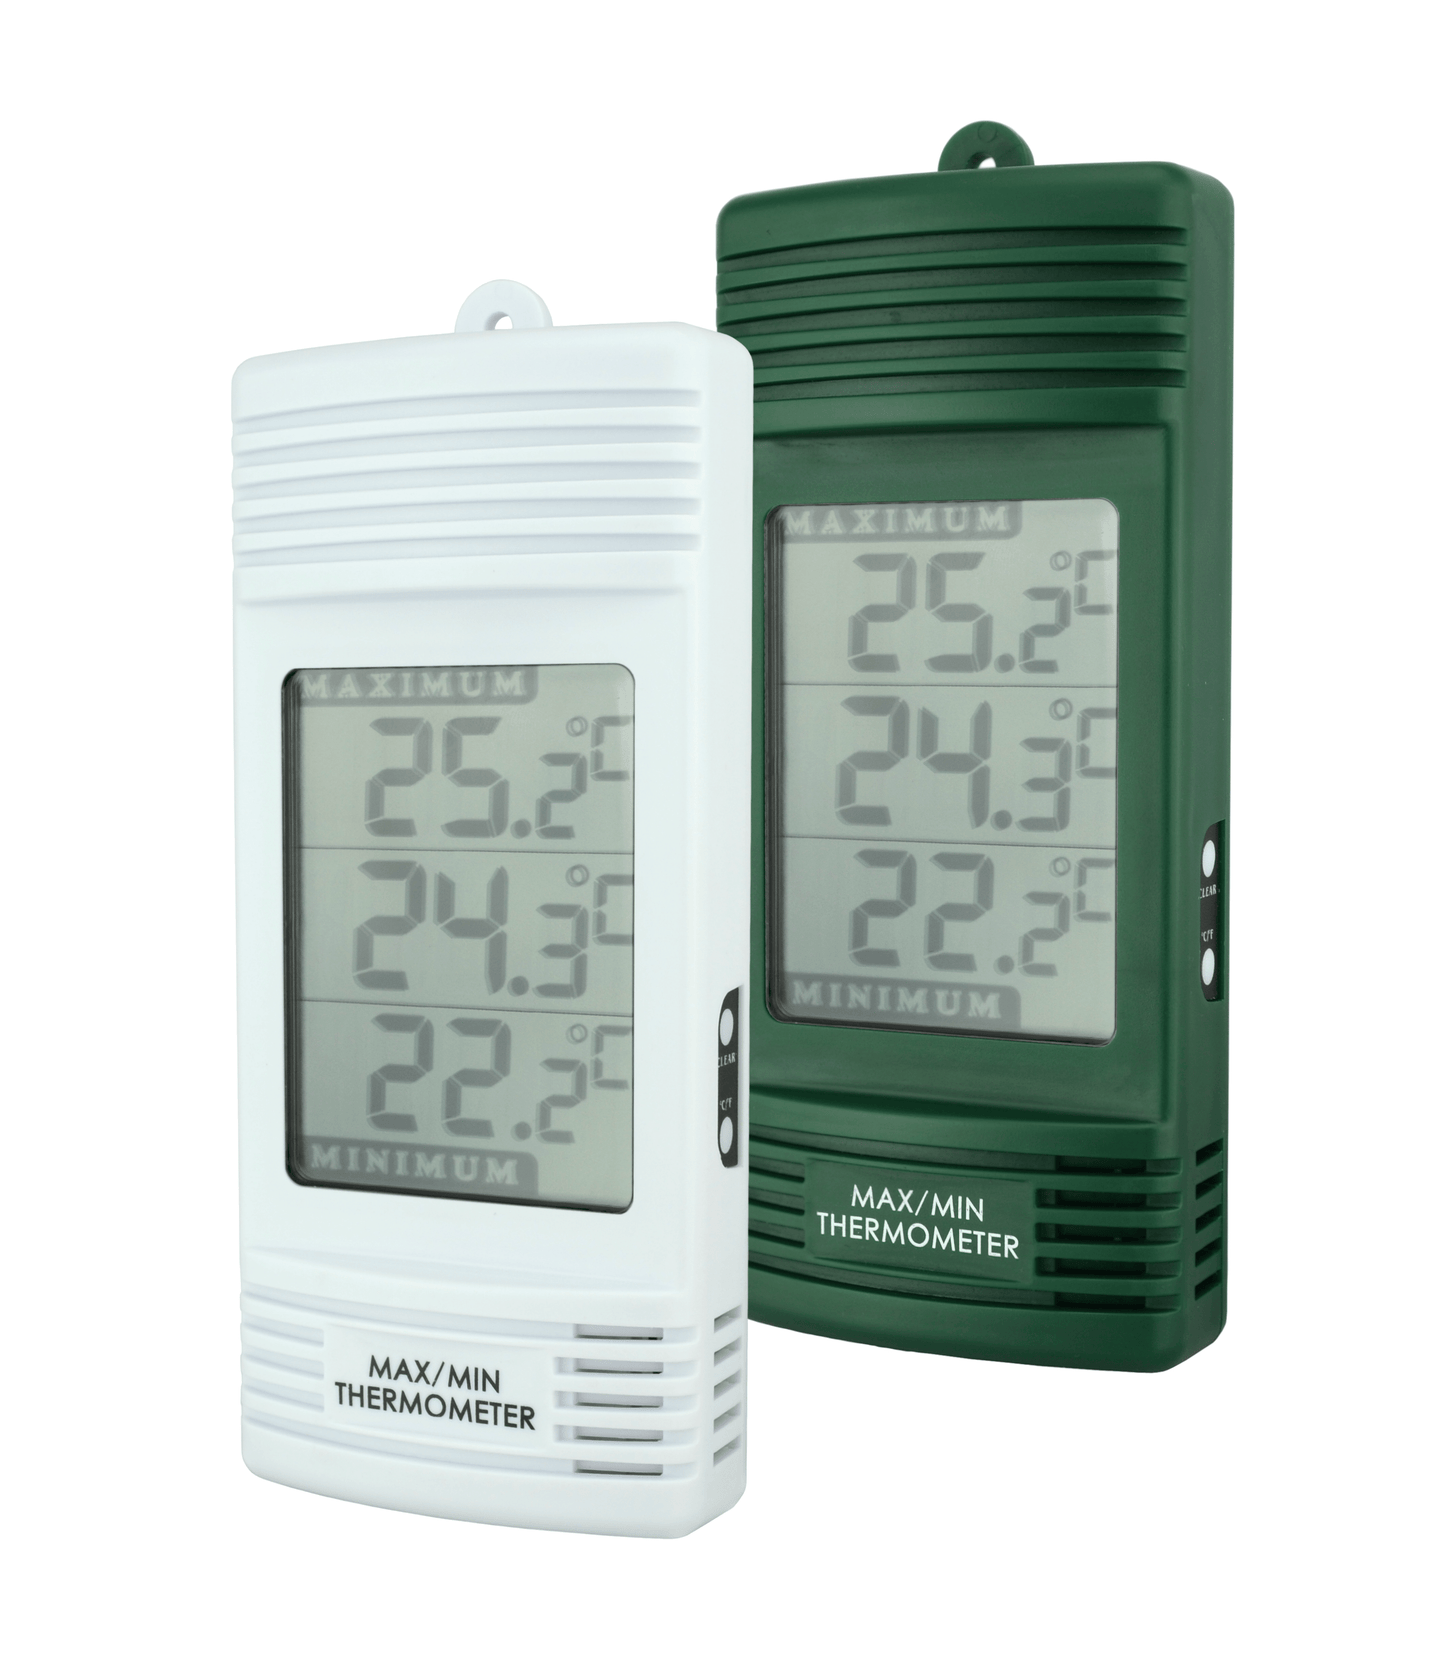 Deux Thermomètre numérique max / min avec capteur de température interne de Thermometre.fr sur fond blanc.